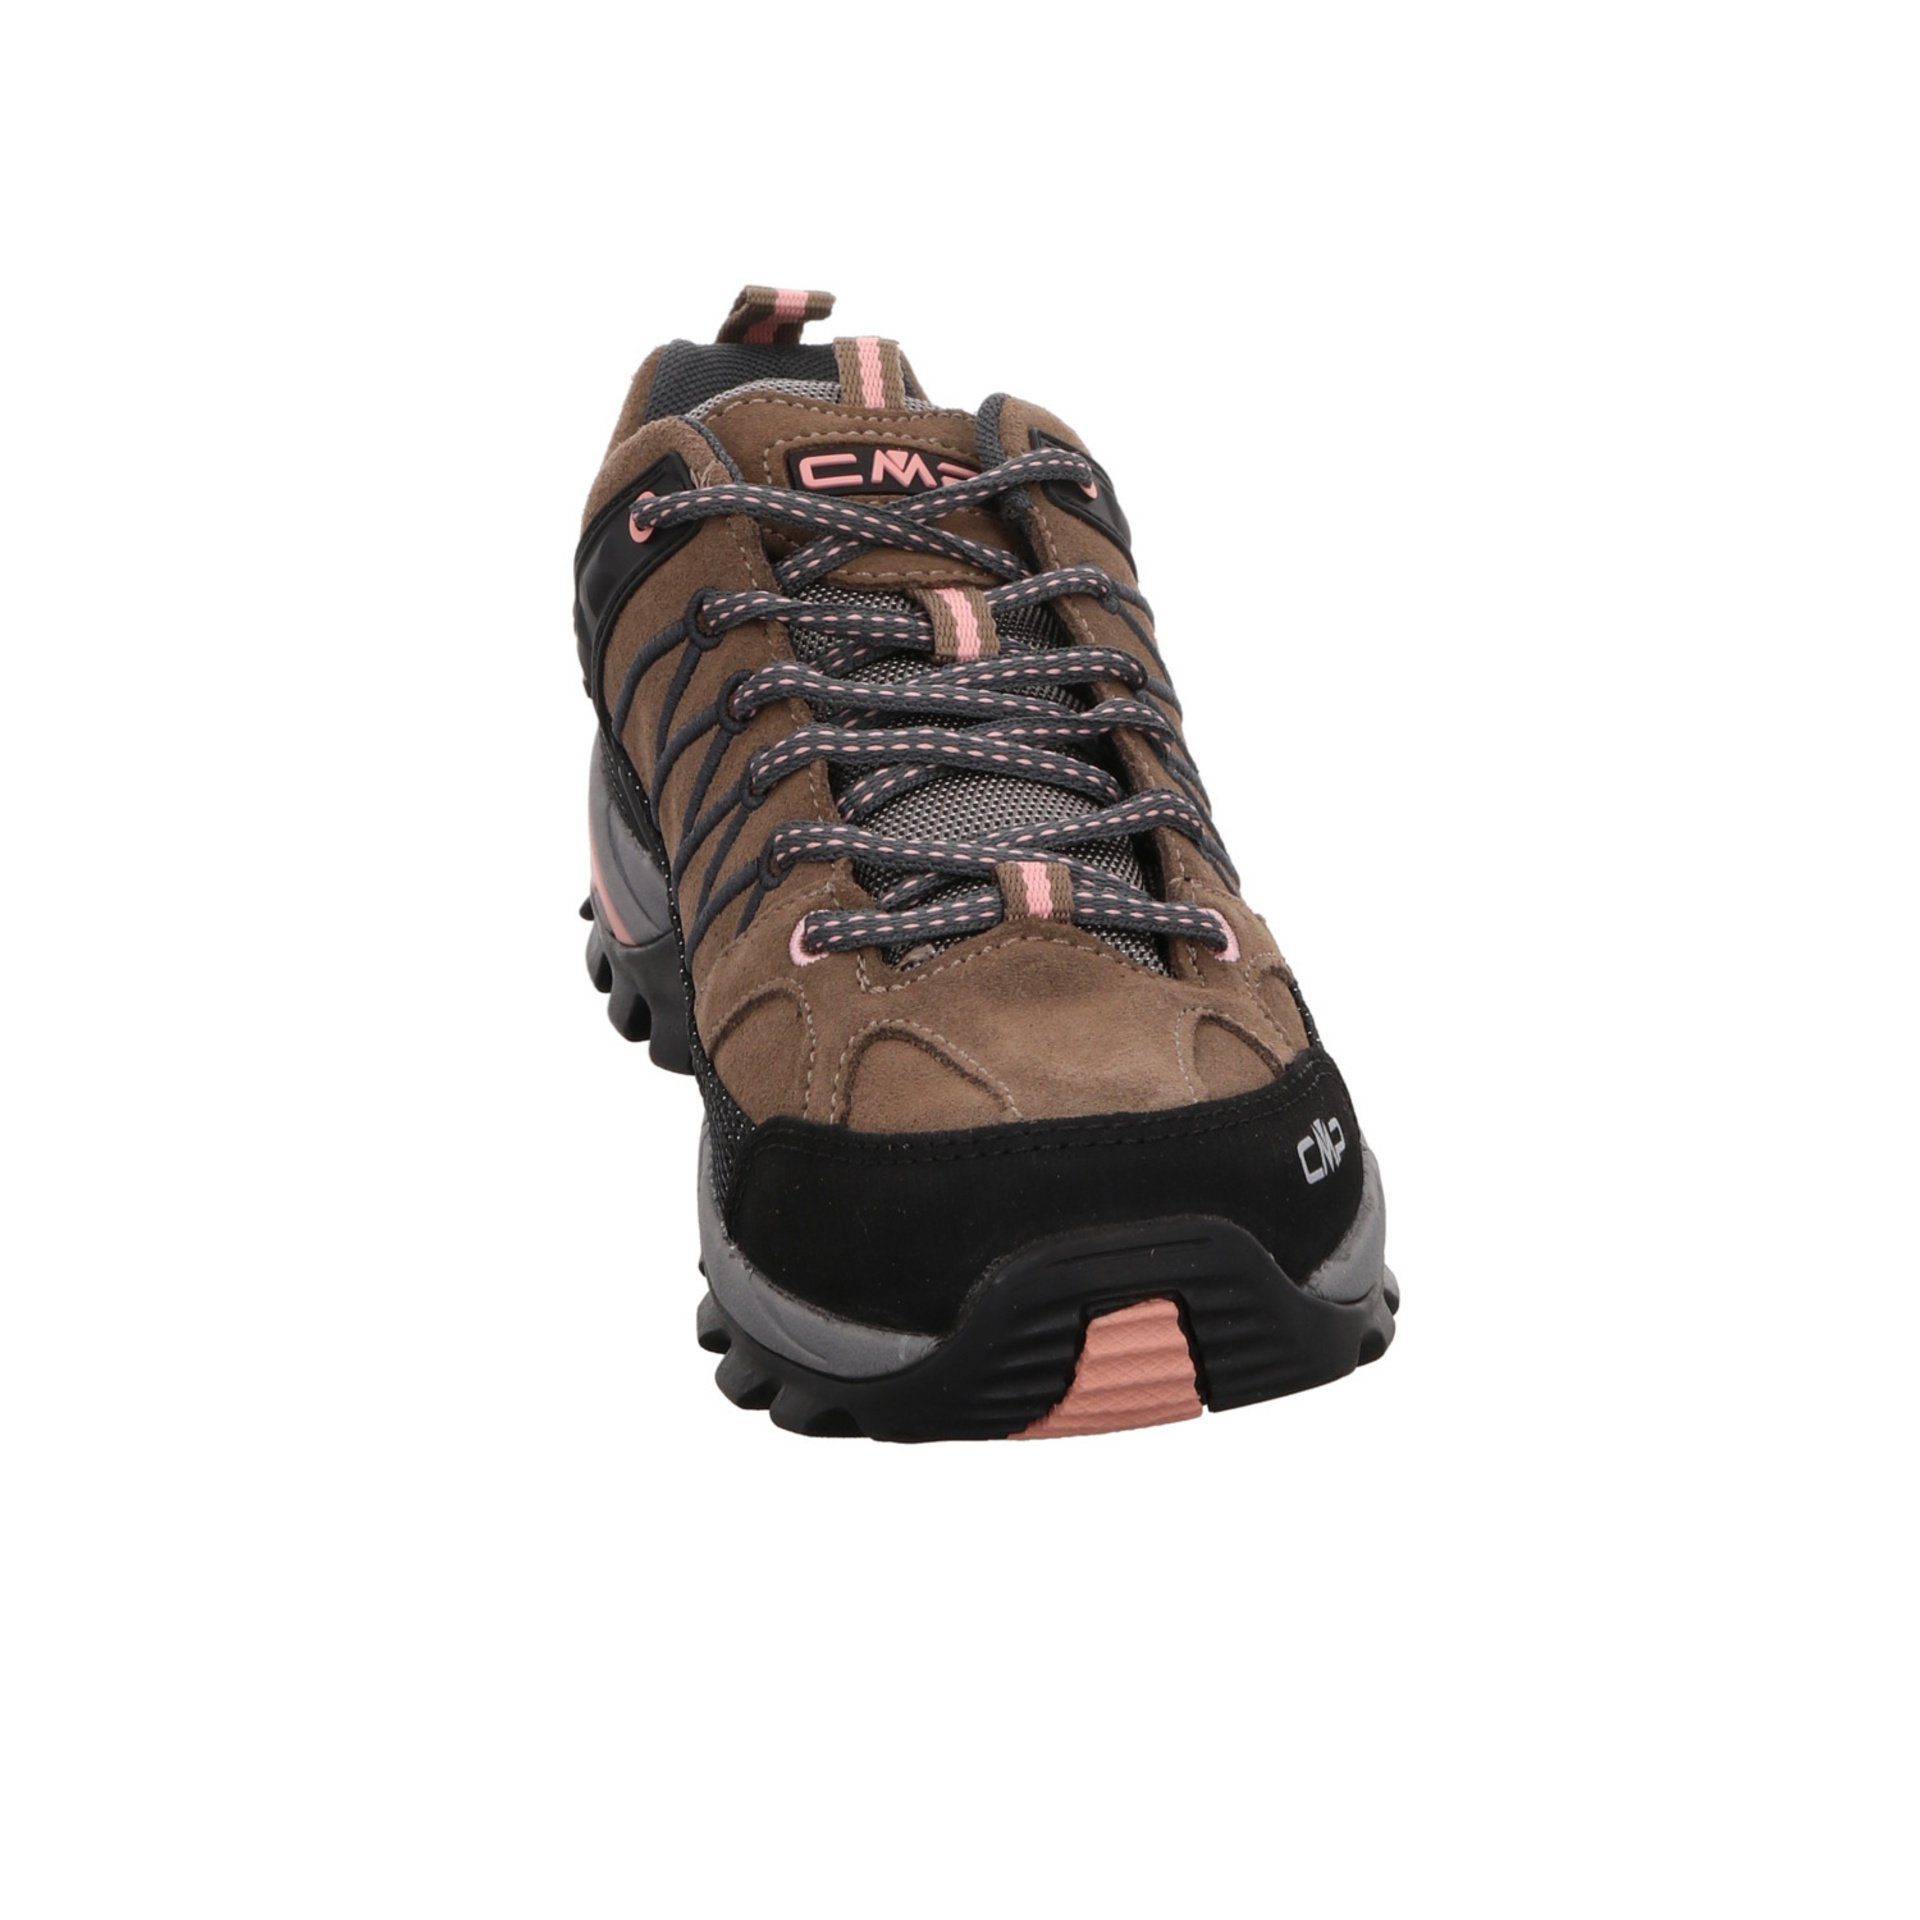 CMP Damen Leder-/Textilkombination Schuhe Low Rigel CENERE Outdoorschuh Outdoor Outdoorschuh